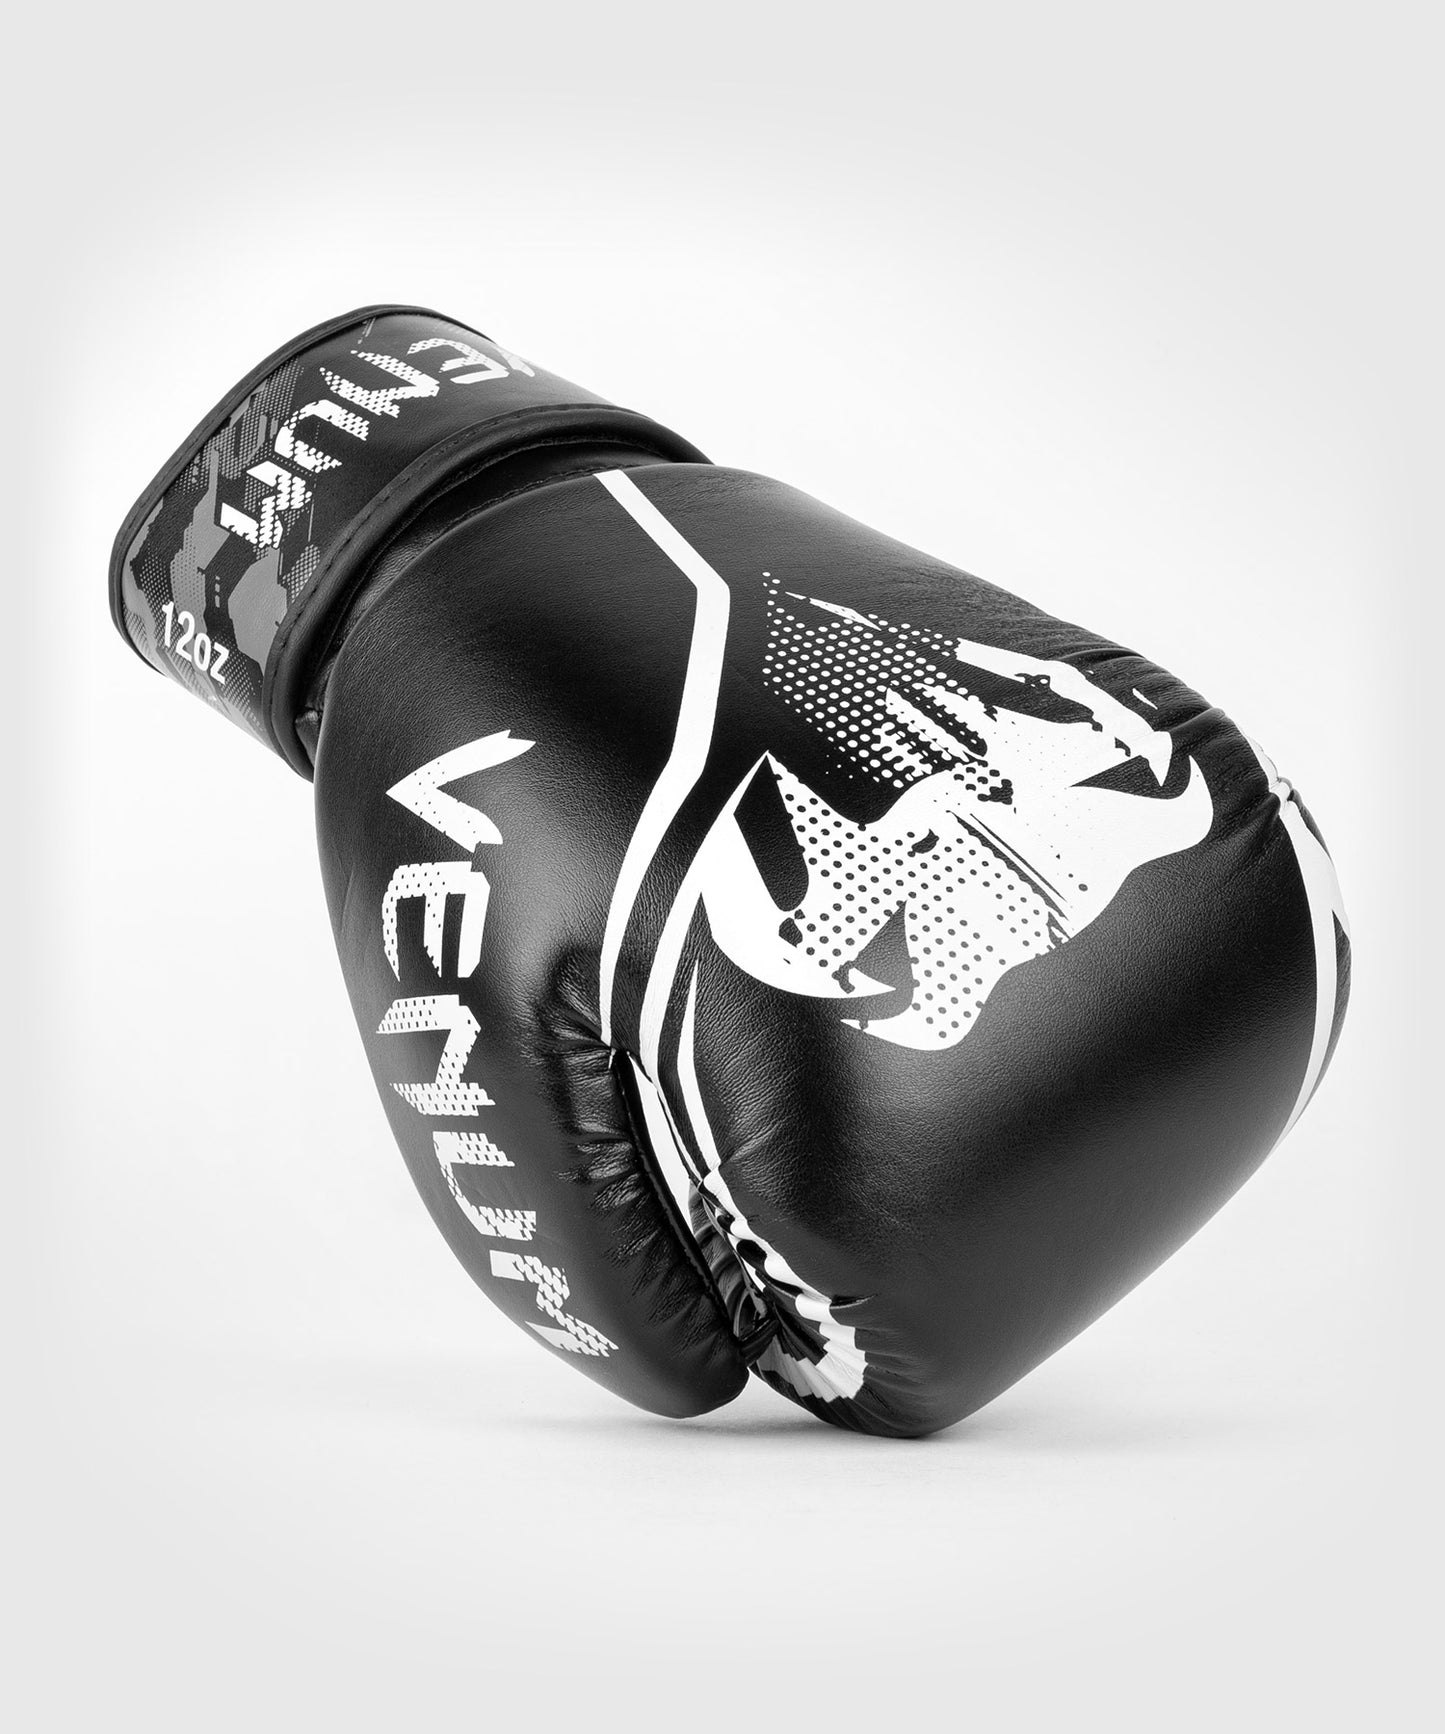 Venum Contender 1.2 Boxing Gloves - Black/White